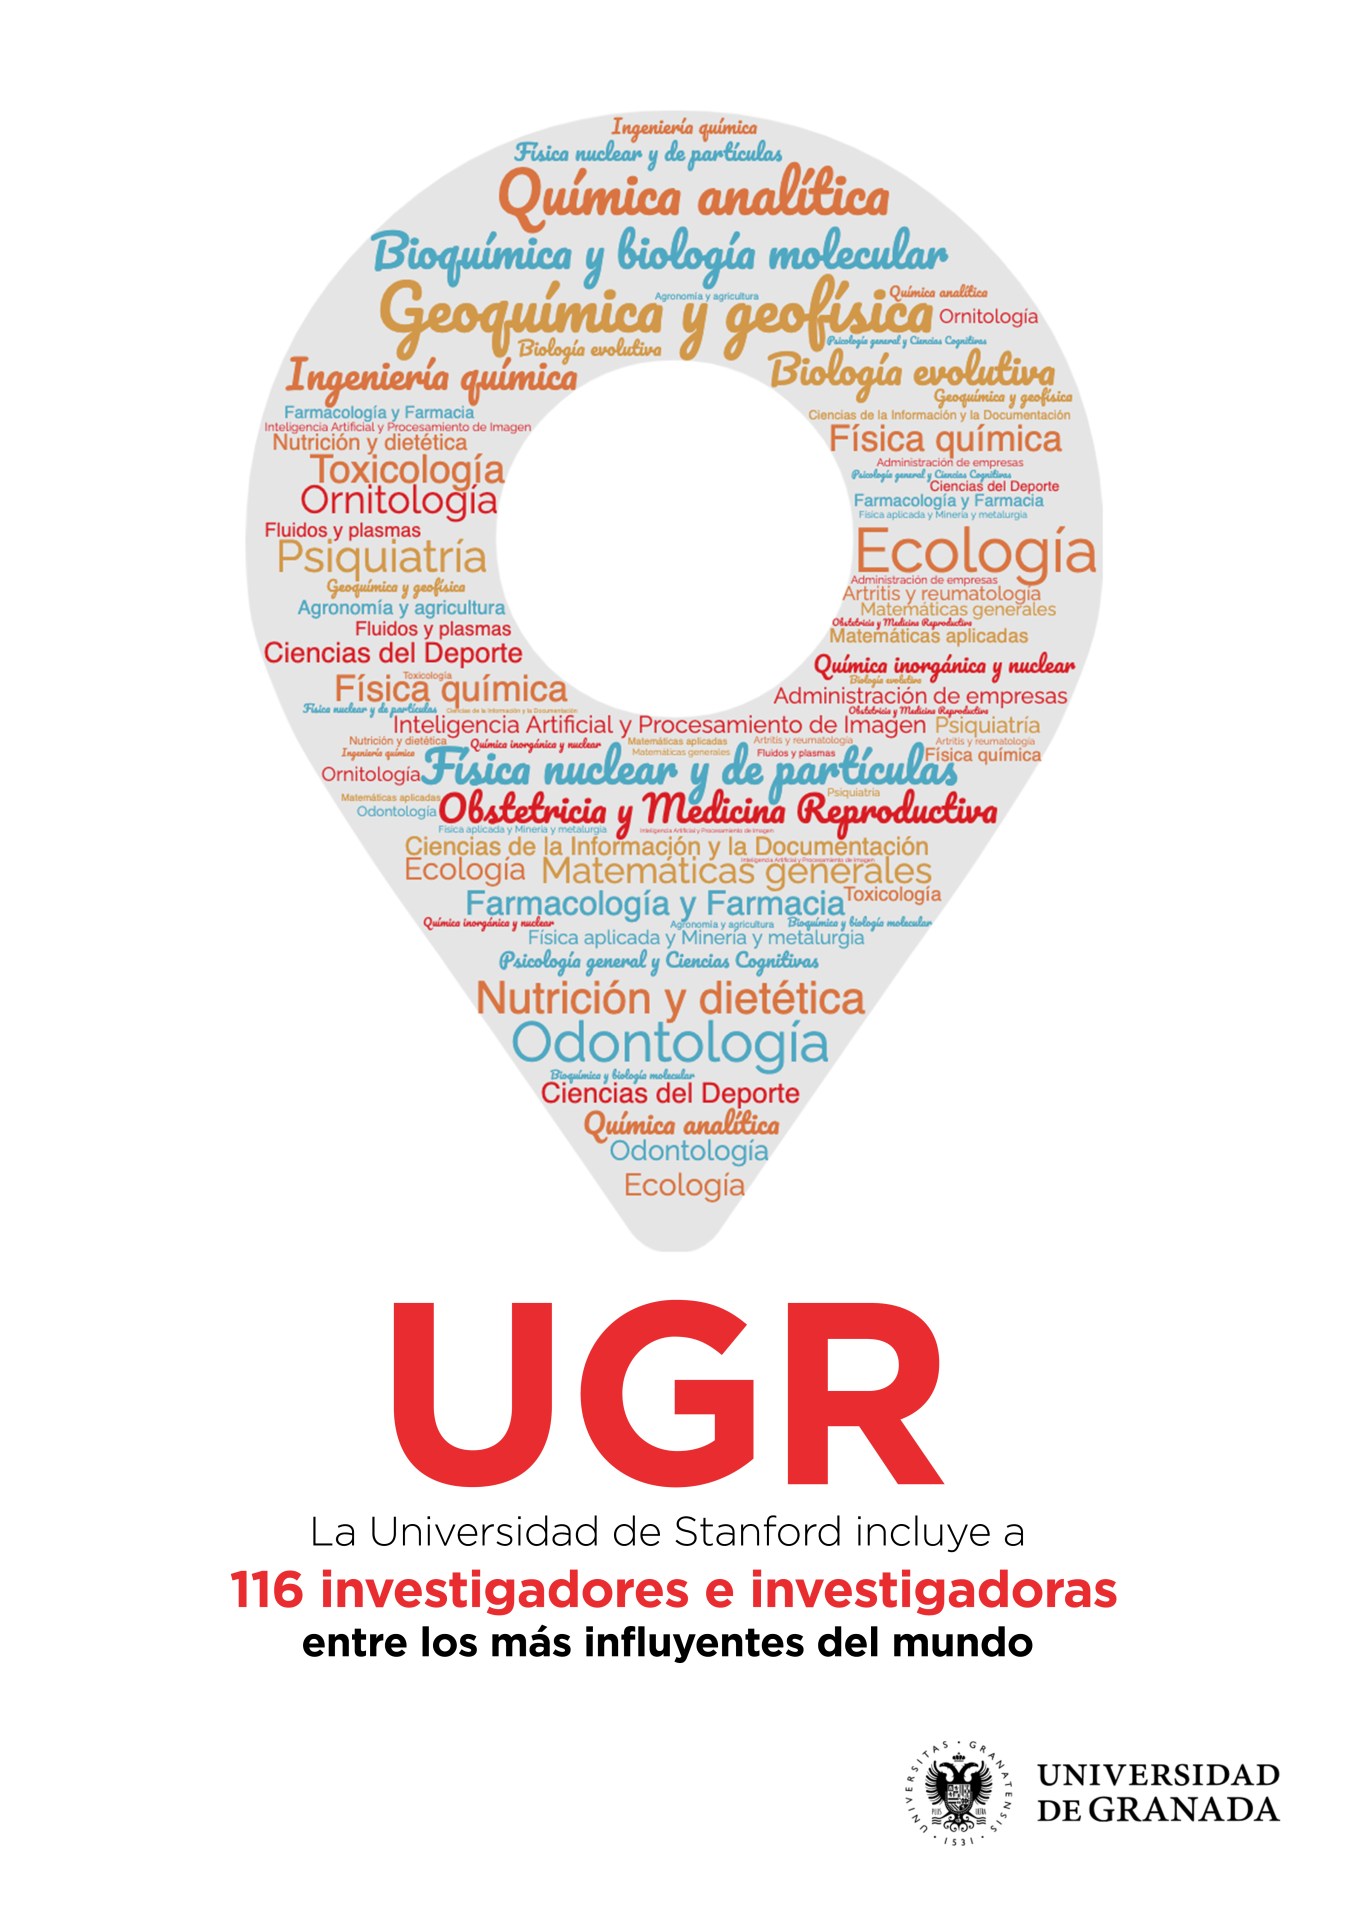 figura formada por los nombres de los investigadores e investigadores más influyentes de la UGR